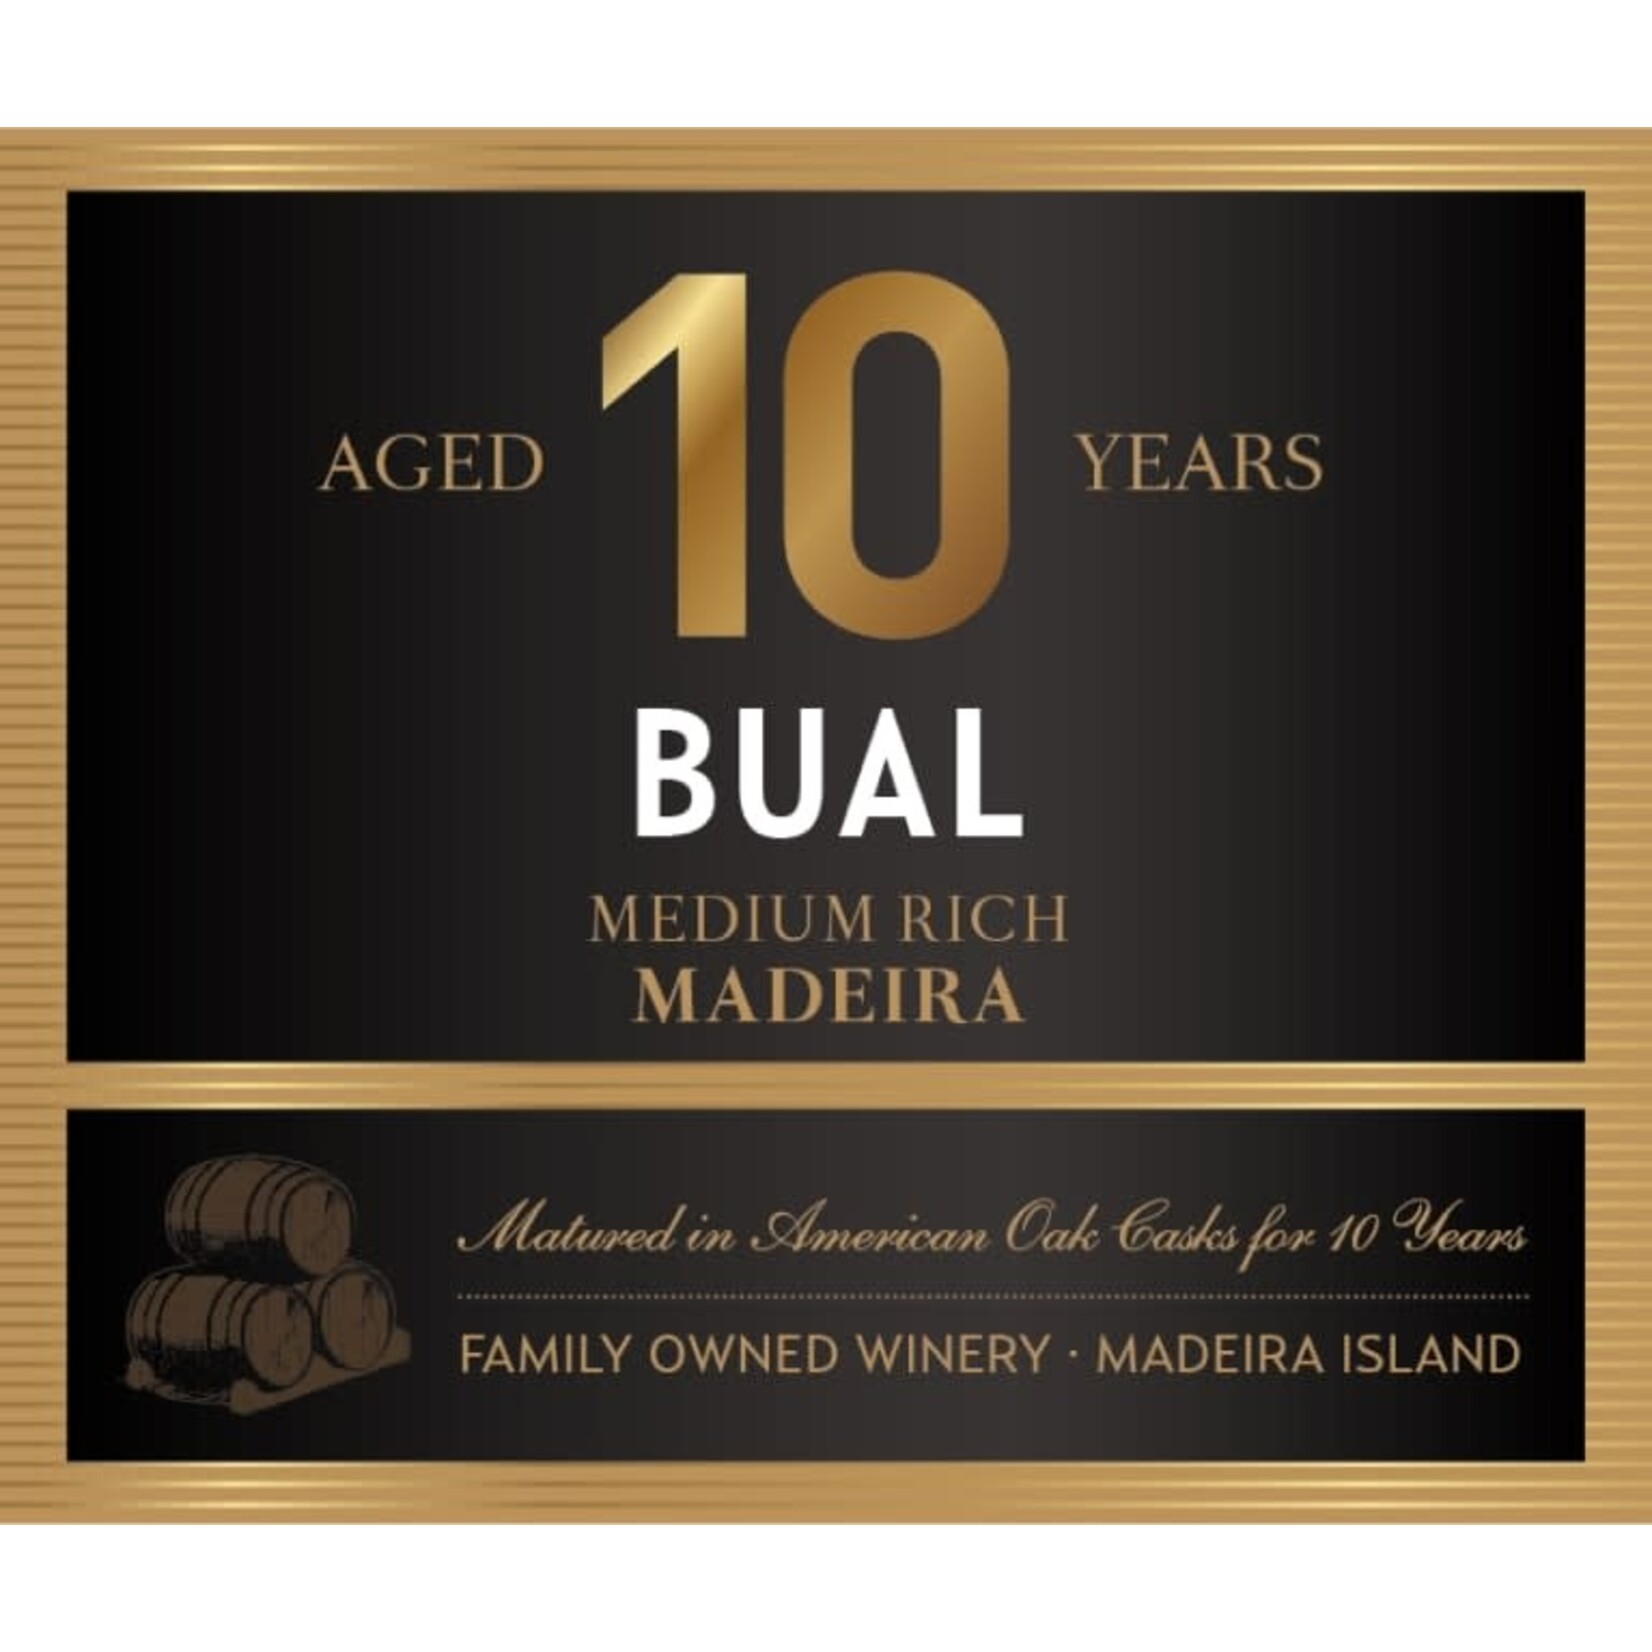 Blandy's Blandy's Medium Rich Madeira Aged 10 Years Bual  Portugal